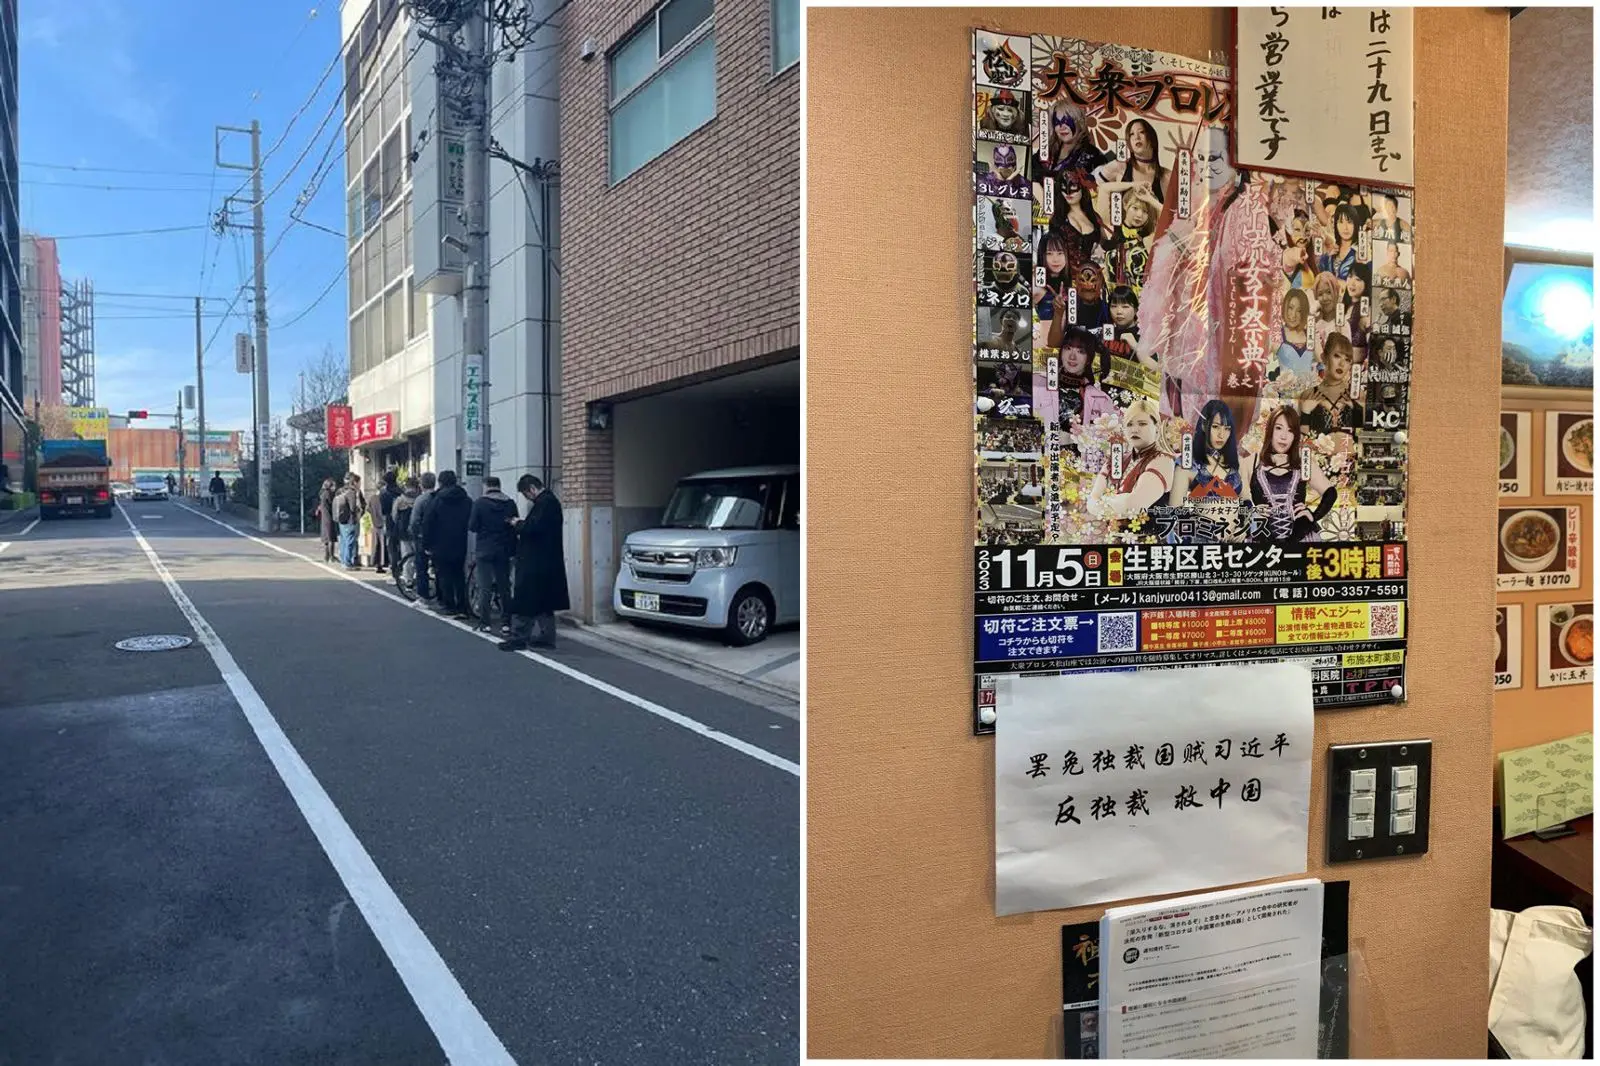 日本餐厅遭乱闹“成反共排队名店”！小粉红被起底约100日女超淫乱